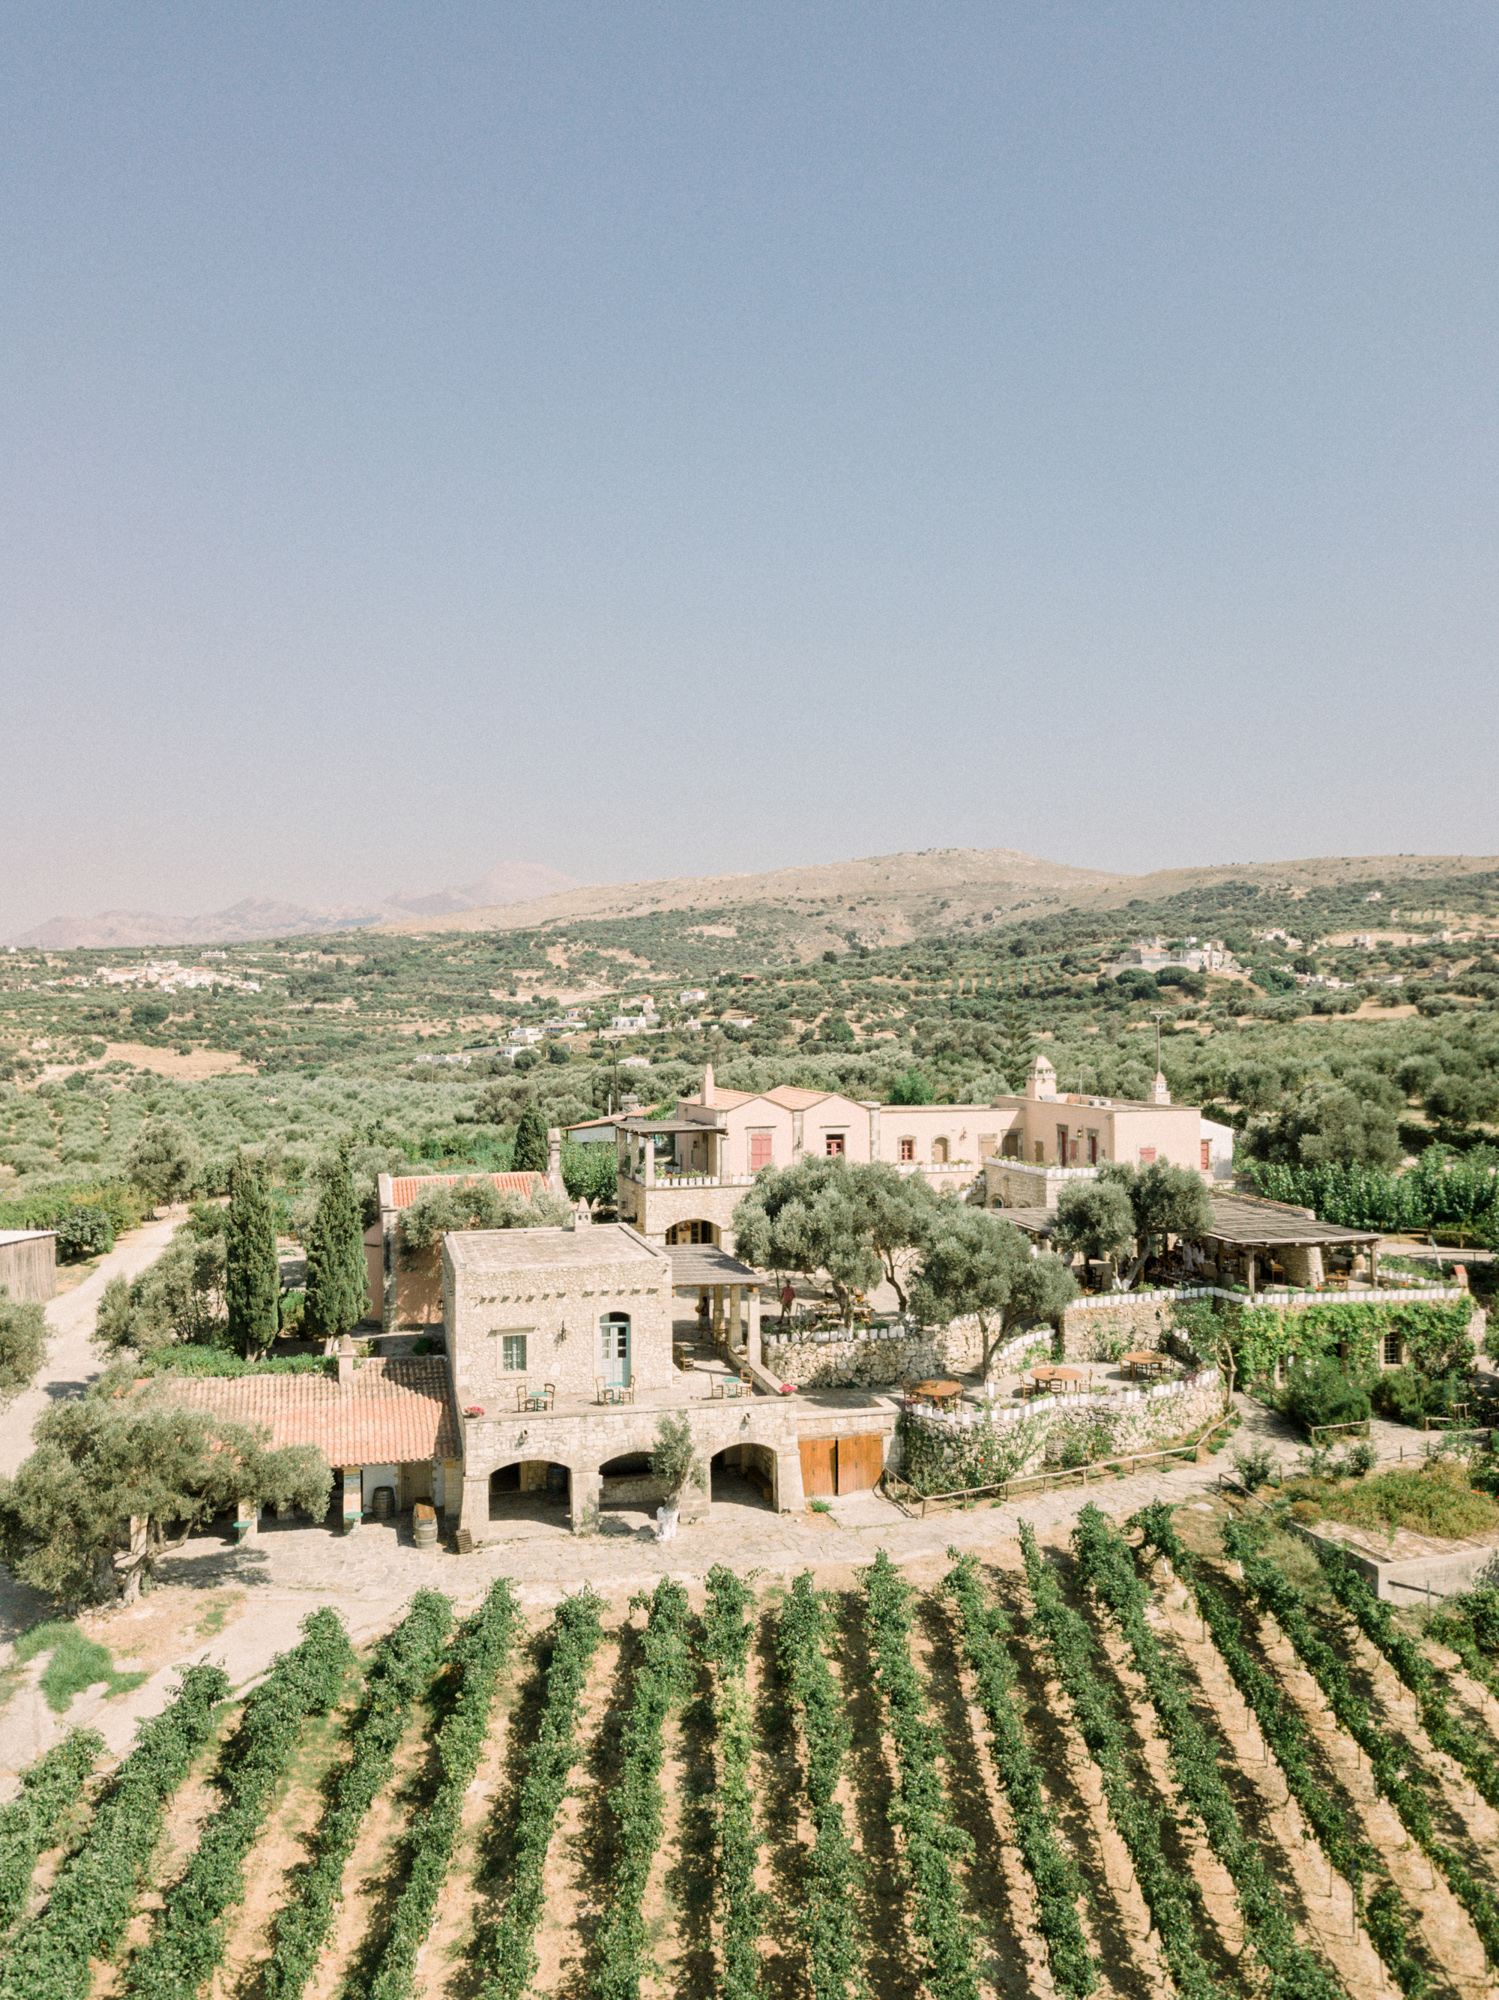 View of Grecotel Agreco Farms wedding venue in Crete Greece.